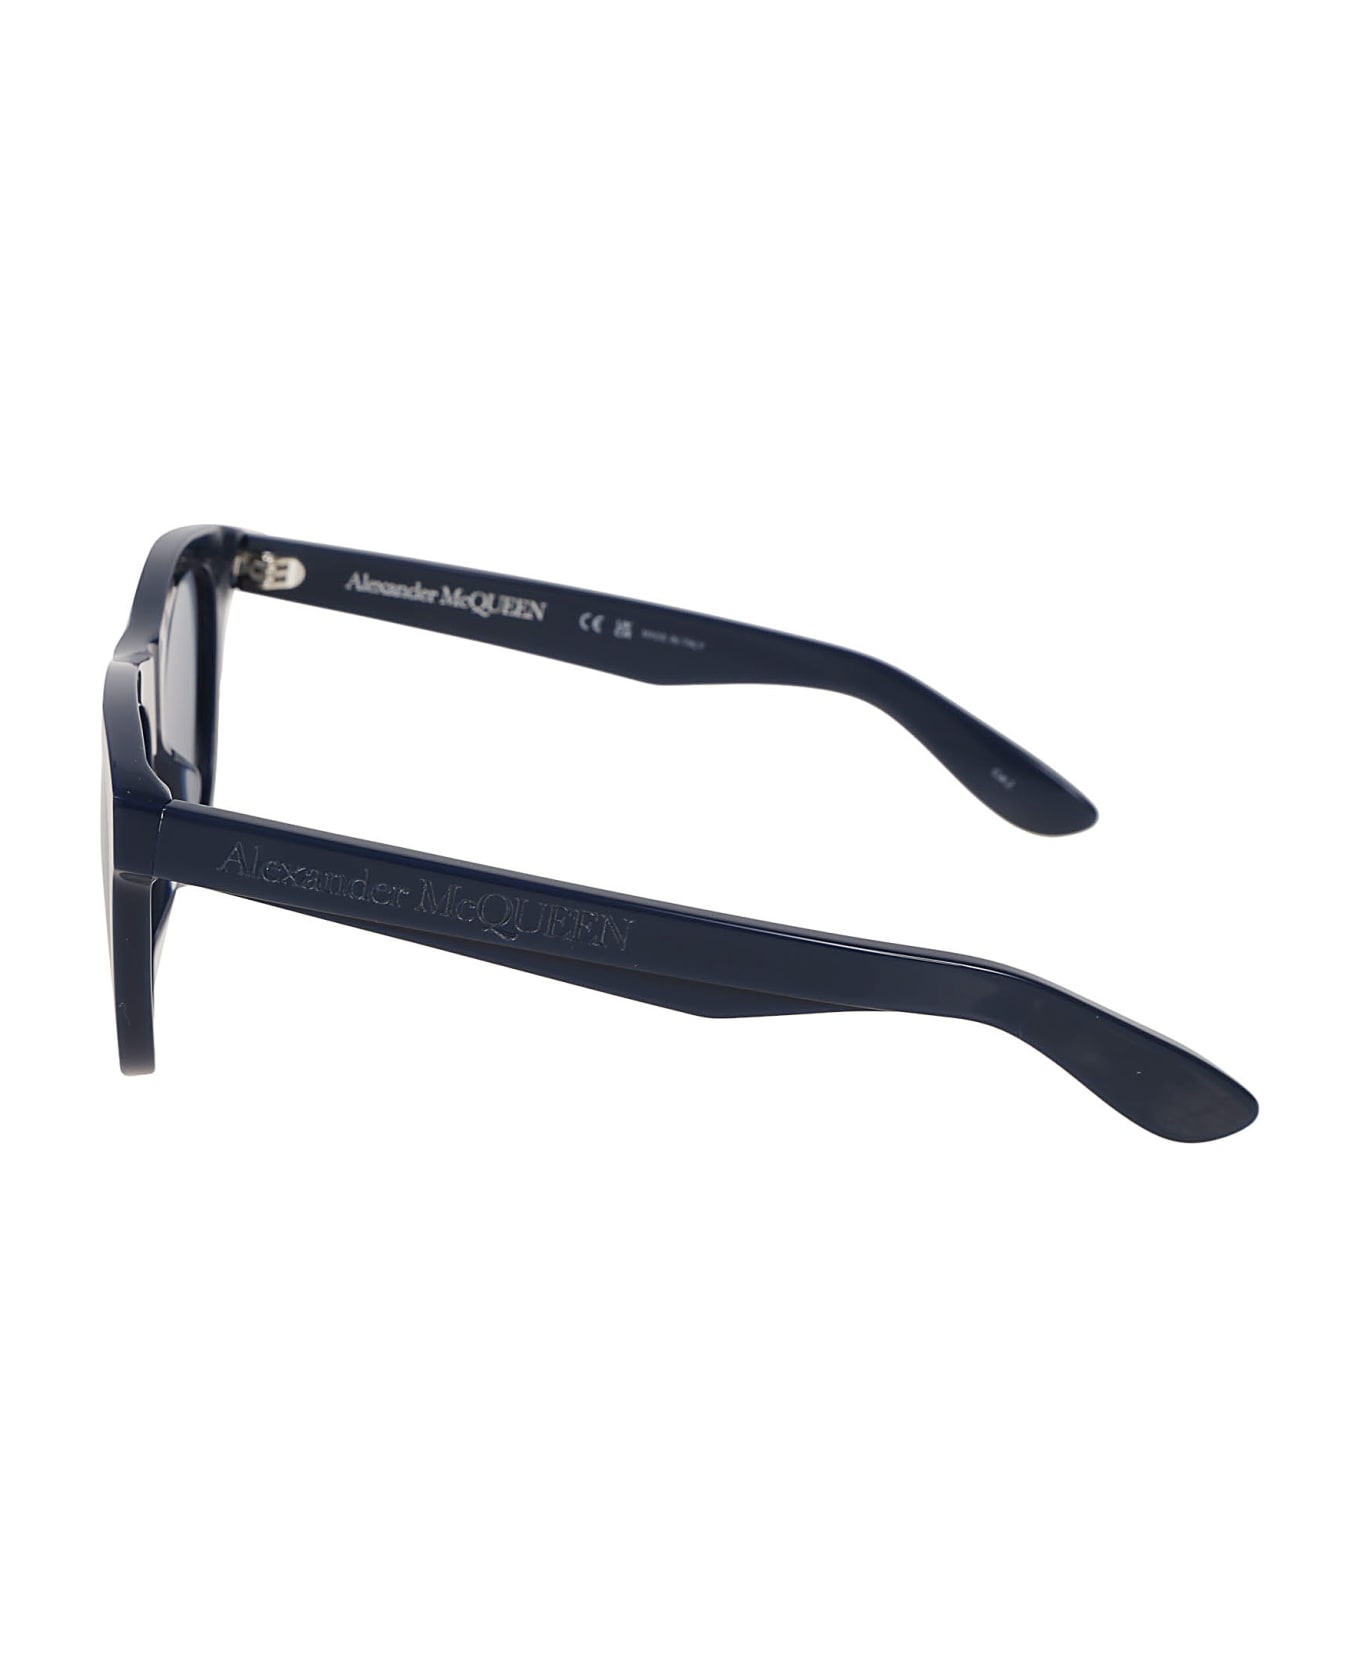 Alexander McQueen Eyewear Am0421s Sunglasses - Blue Blue Blue